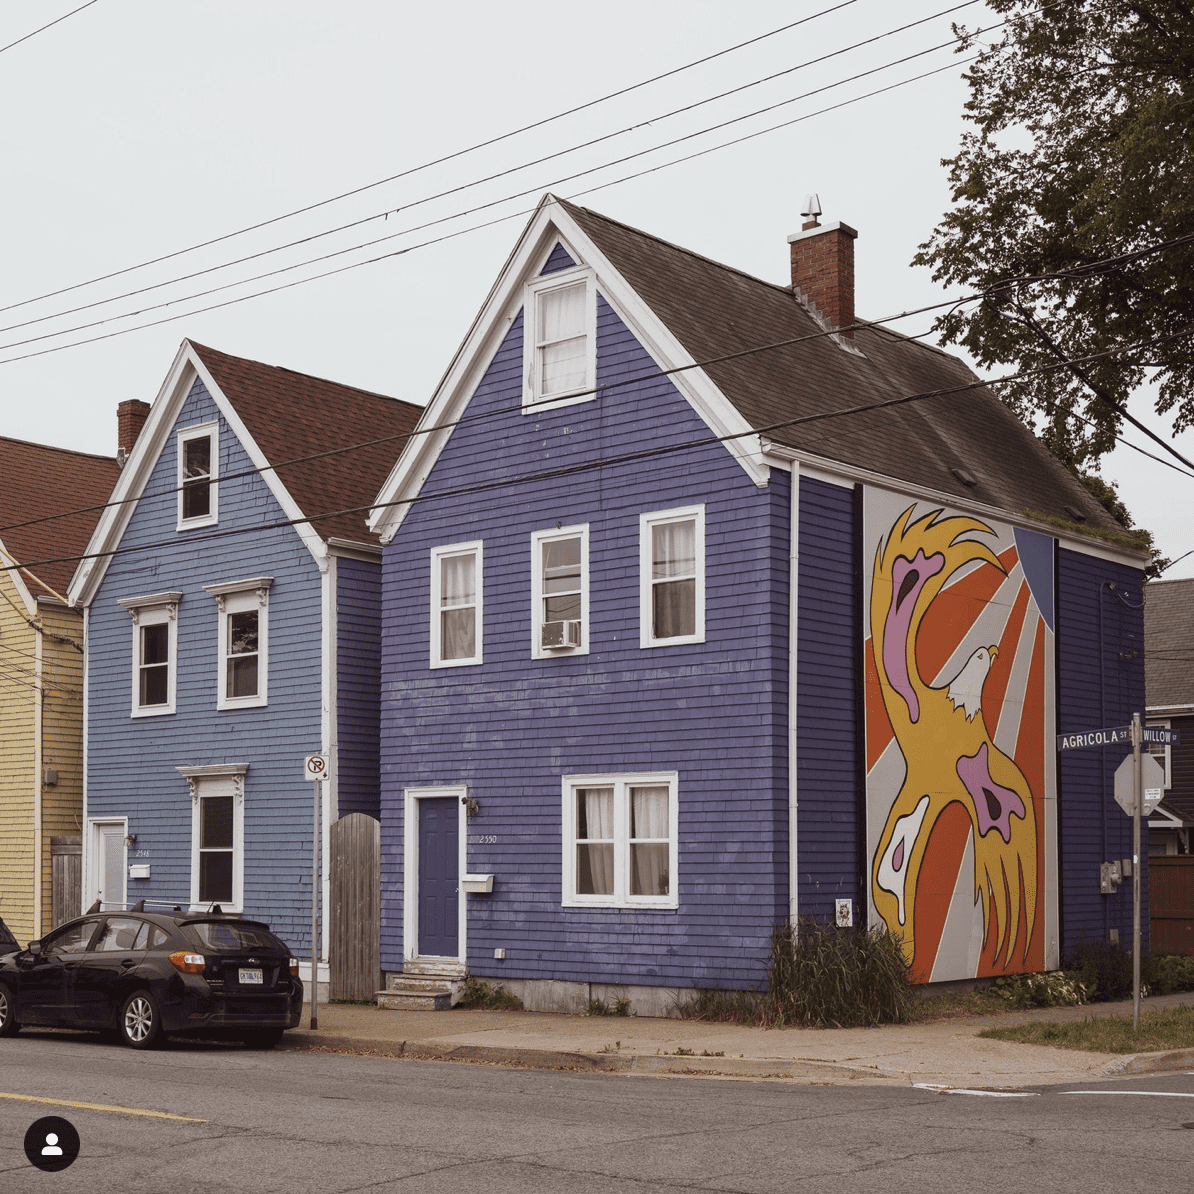 Bunte Häuser in der Agricola Street, einem der Instagram Spots in Halifax